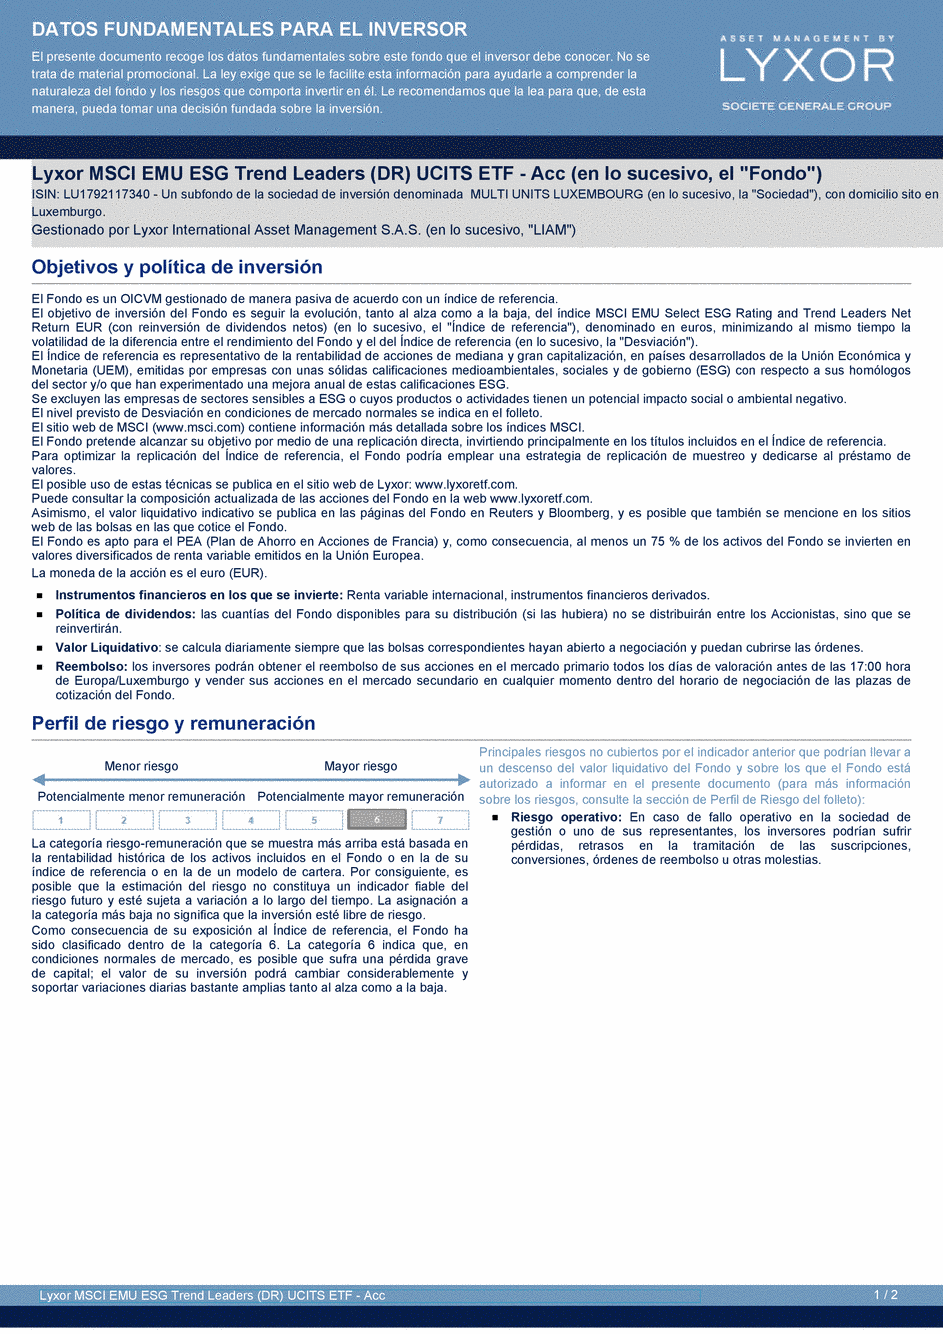 DICI Lyxor MSCI EMU ESG Trend Leaders (DR) UCITS ETF - Acc - 26/10/2020 - Espagnol